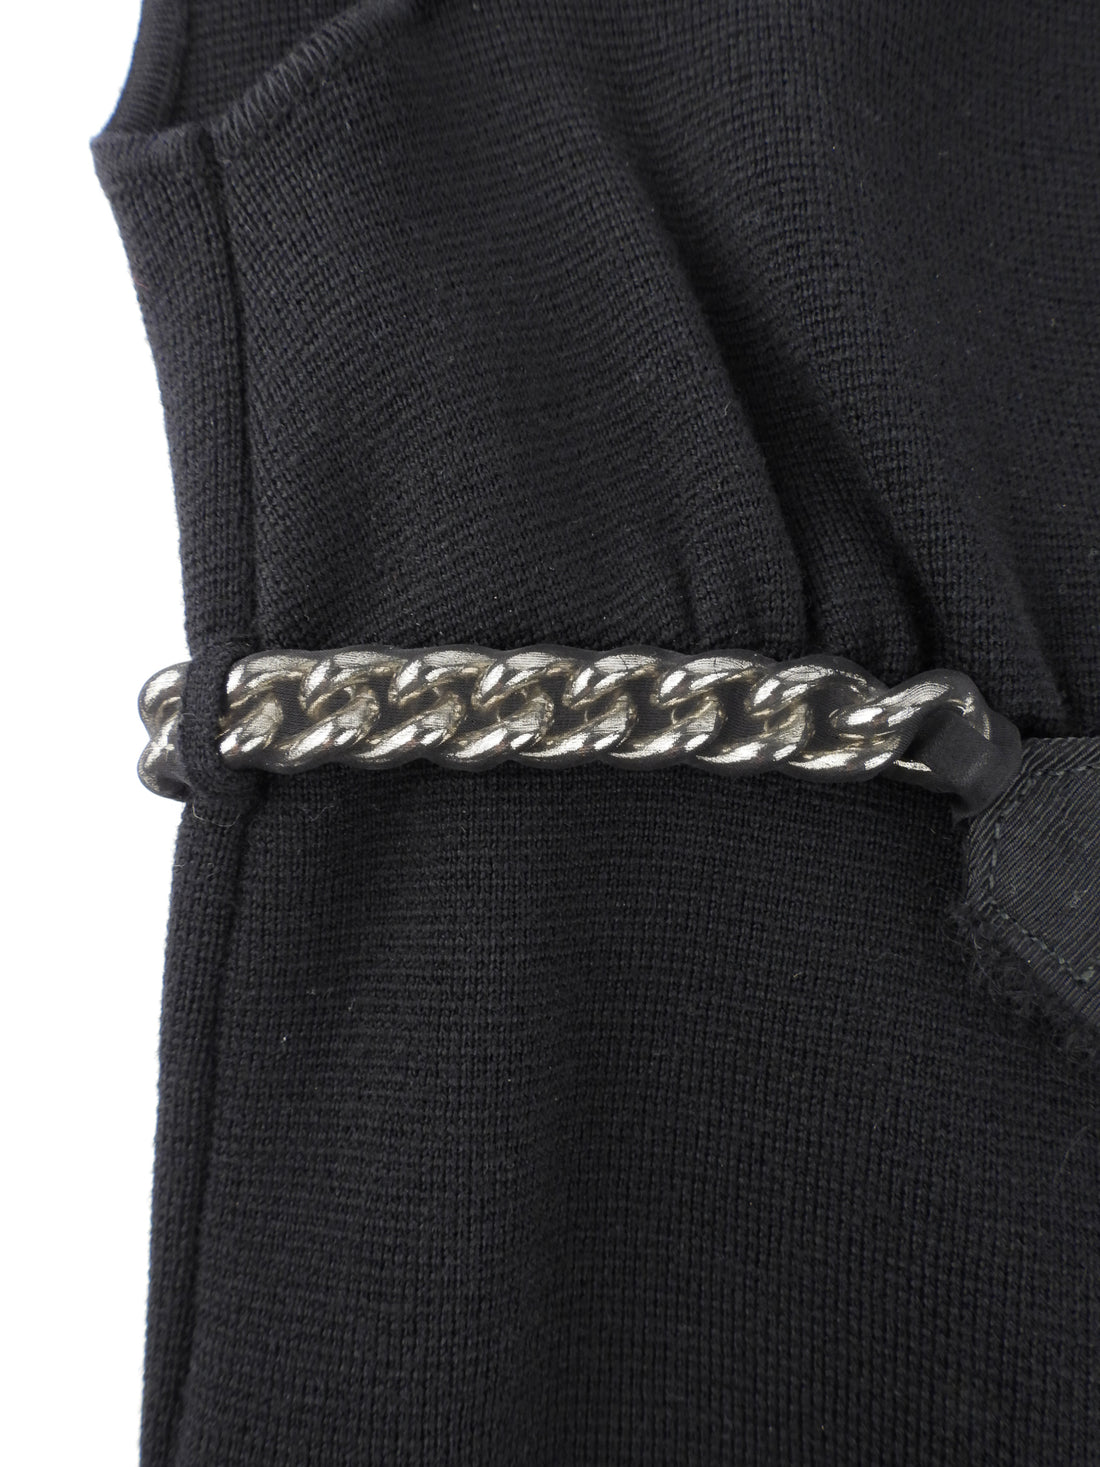 Giambattista Valli Black Knit Wool Chain Belt Peplum Tank Top - 44 / M